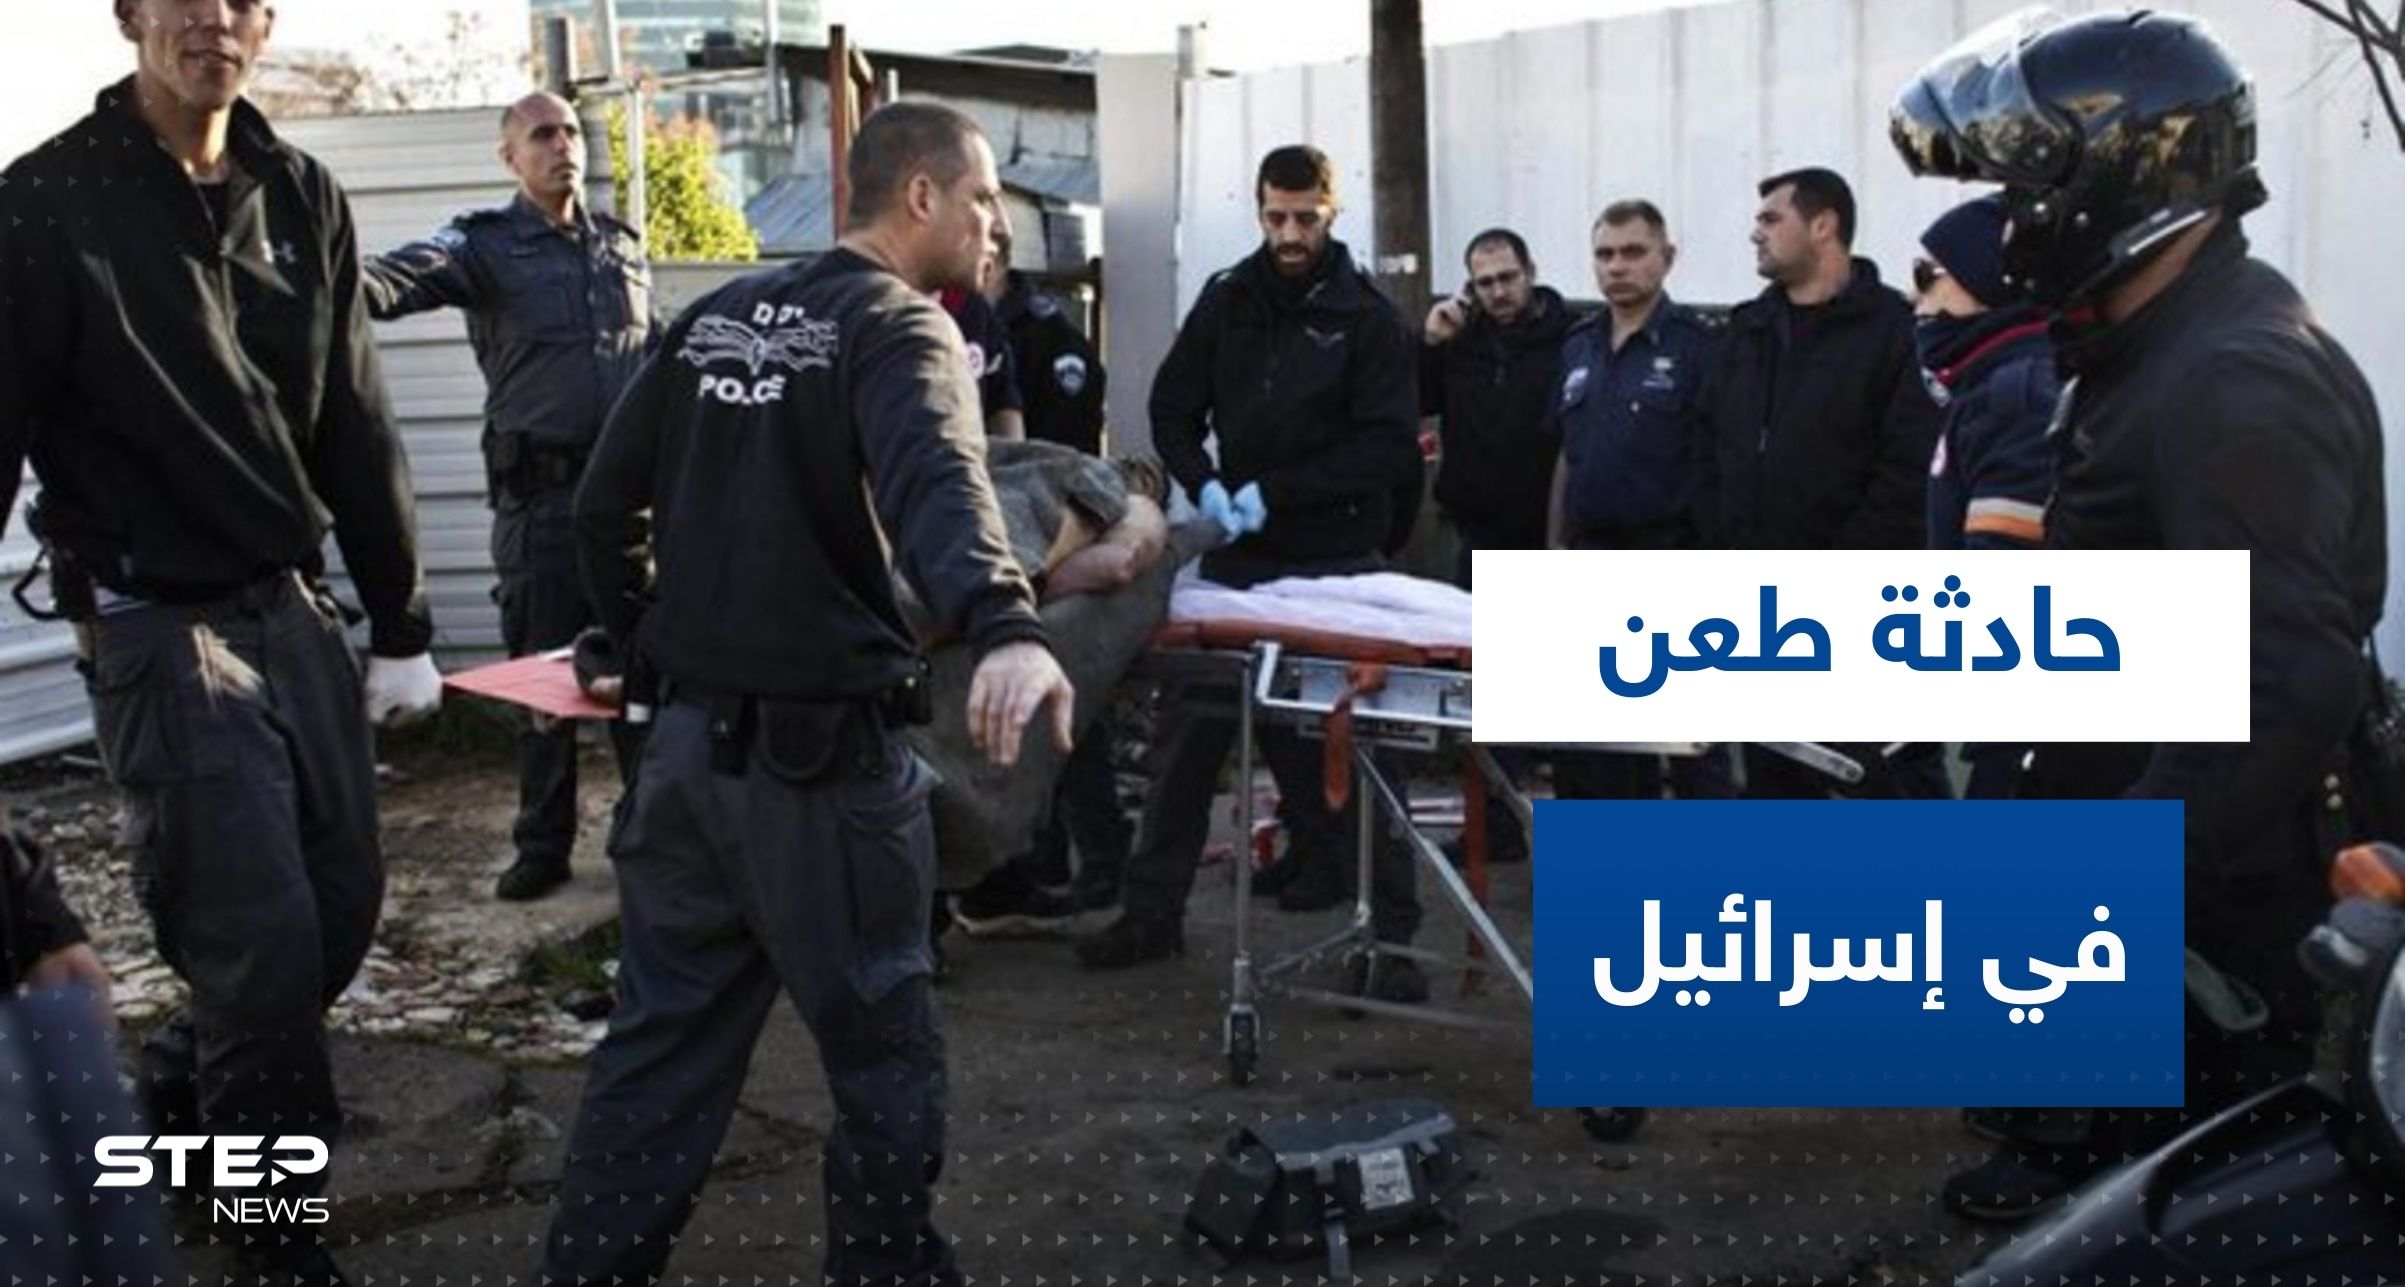 عملية طعن في ريشون لتسيون وإصابة جنود إسرائيليين.. وفيديو للحظة اعتقال منفذ العملية